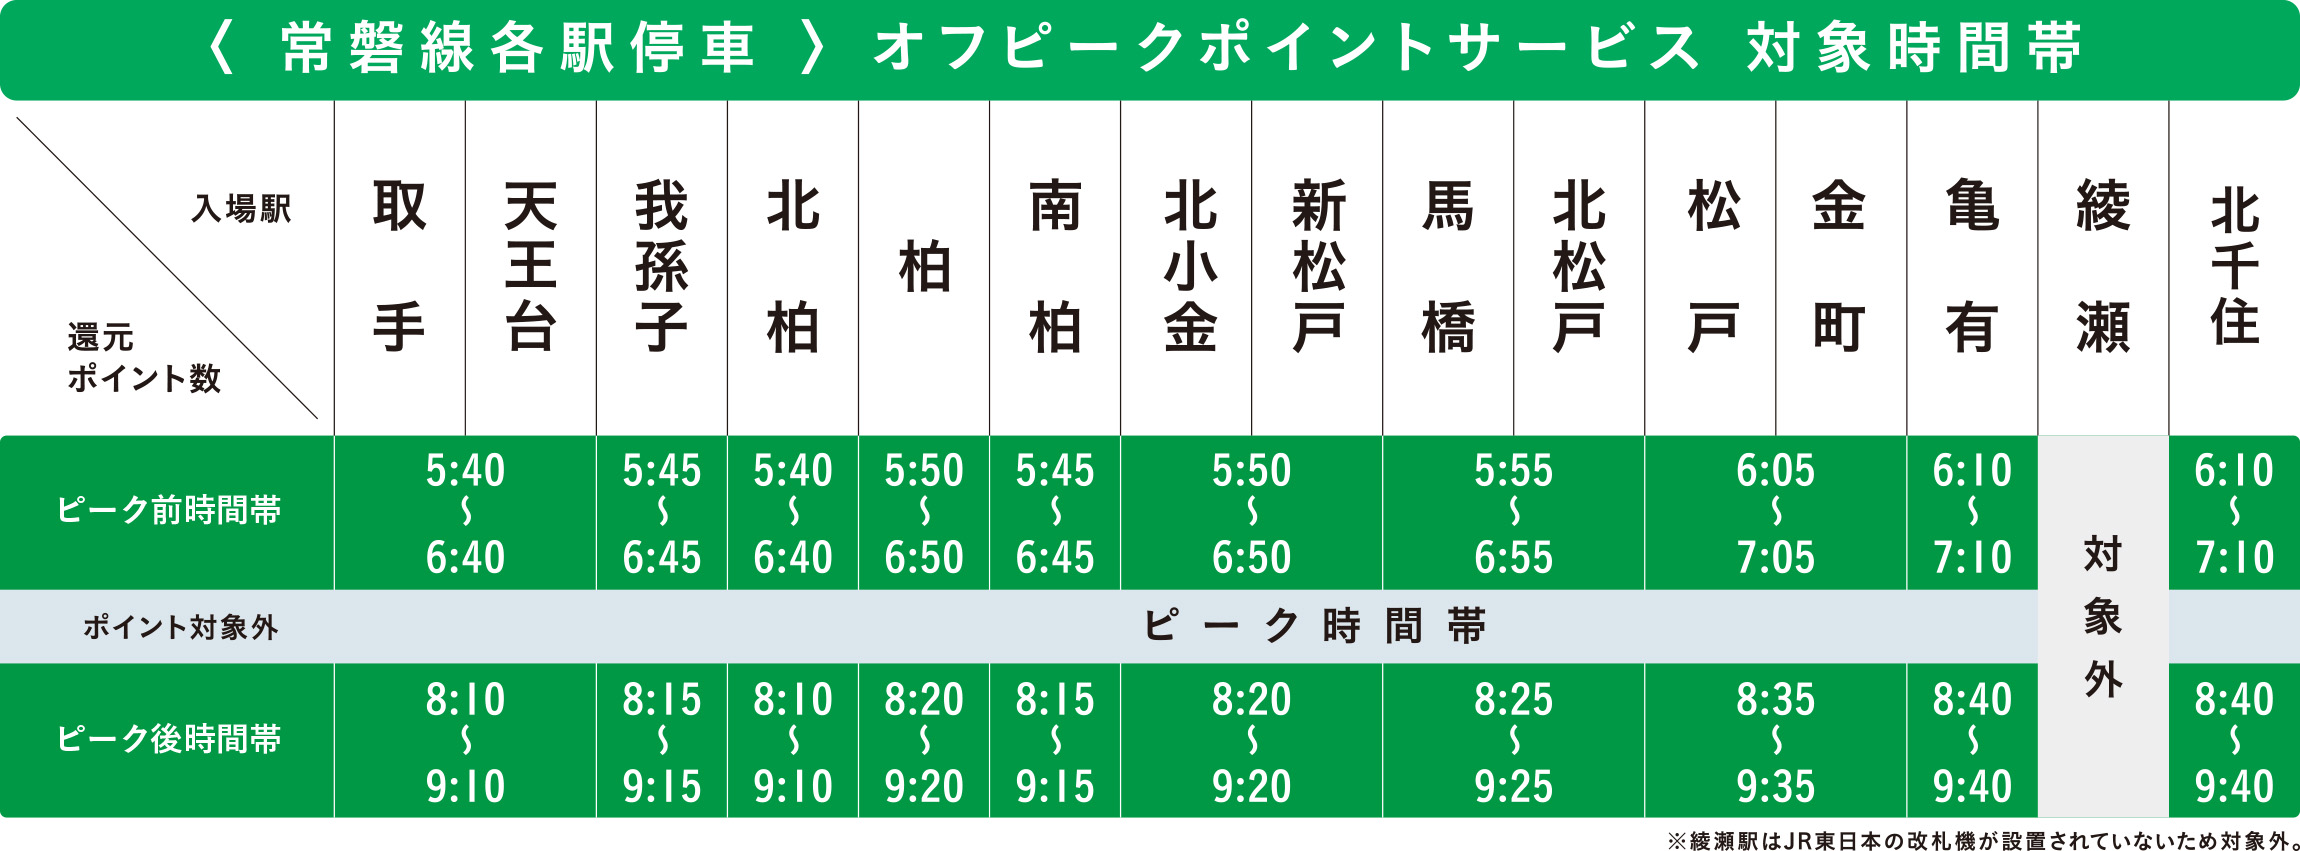 常磐線各駅停車オフピークポイントサービス対象時間帯